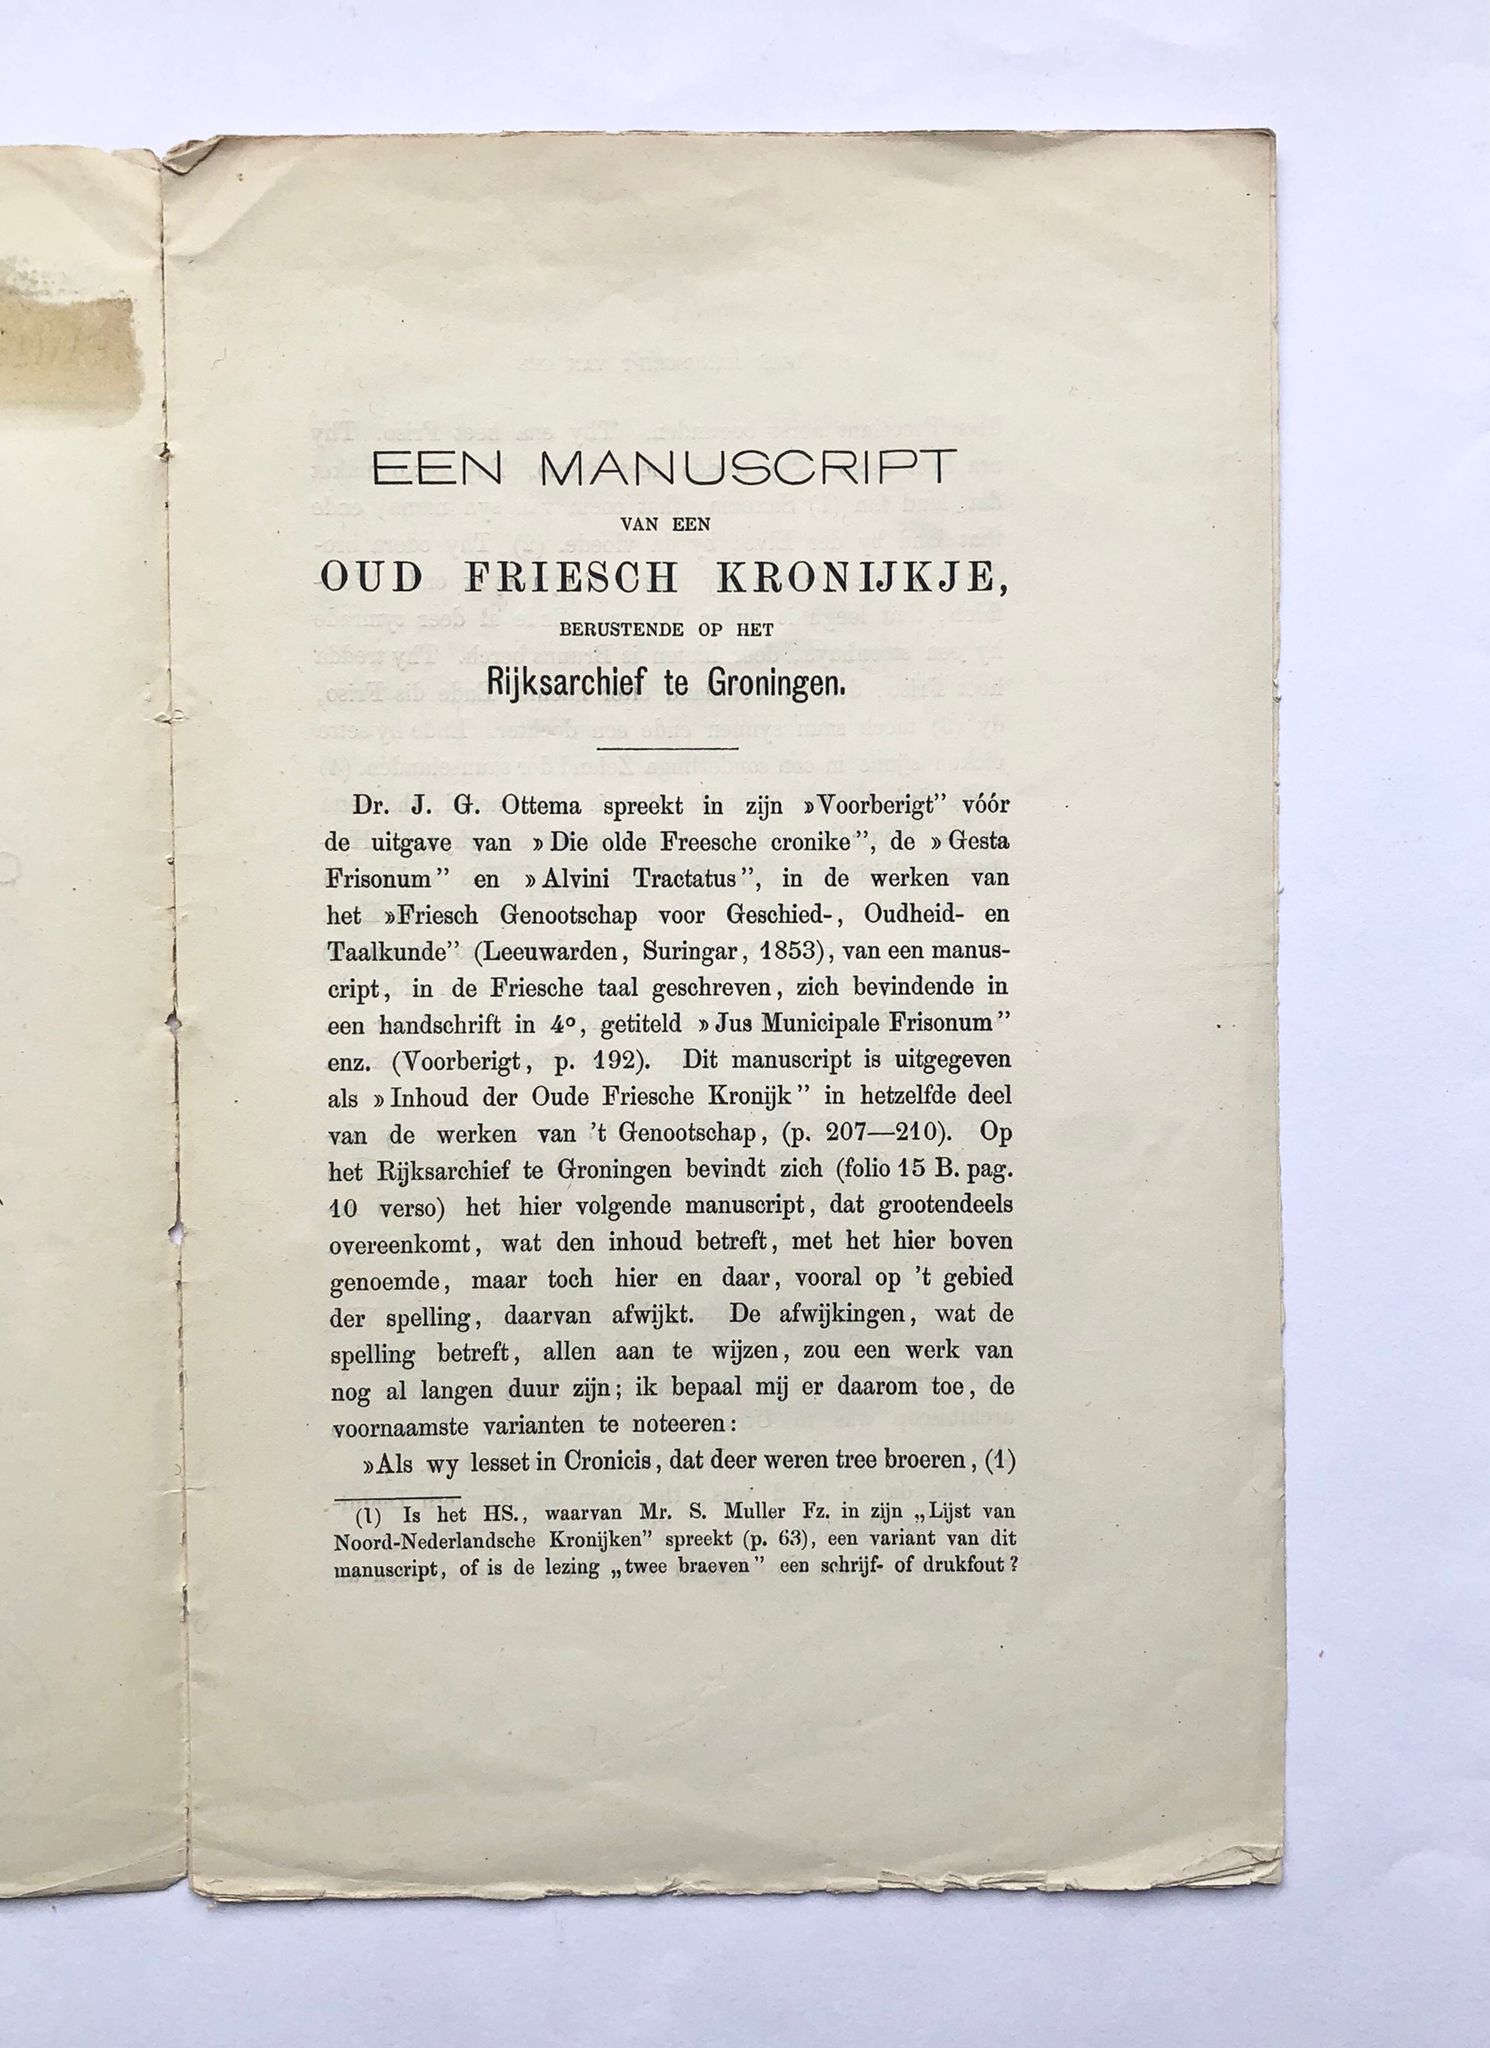 [Friesland, 1885] Een manuscript van een Oud Friesch Kronijkje, berustende op het Rijksarchief te Groningen, 1885, p. 440 - 448.